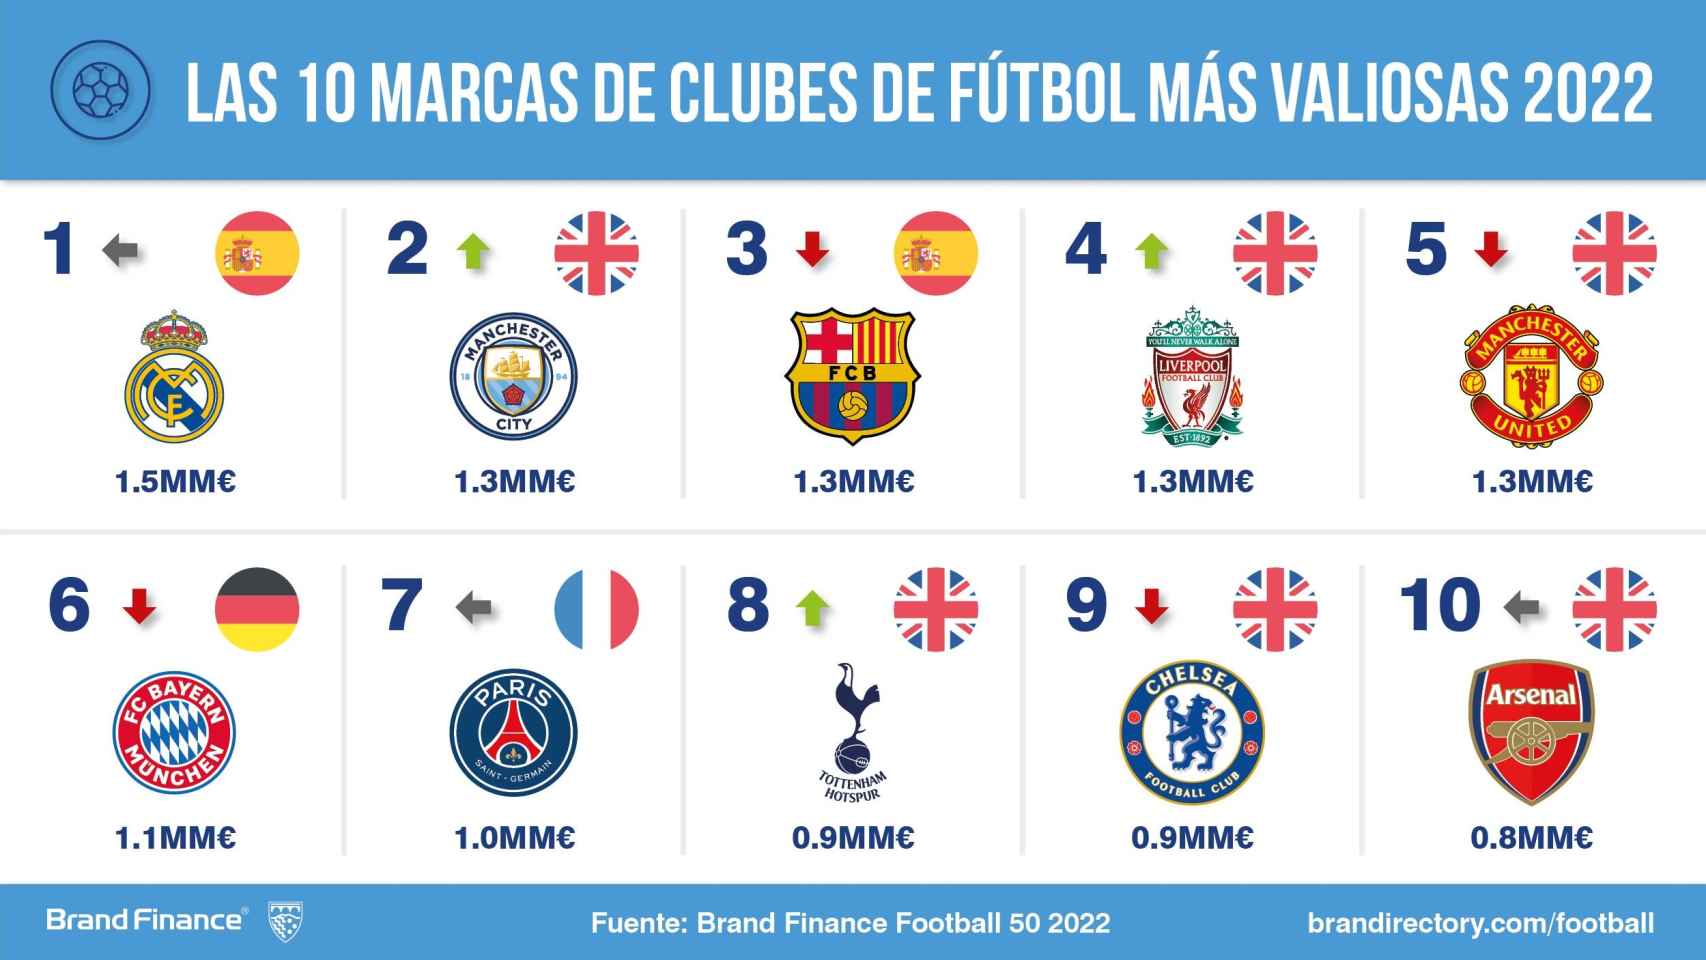 Las marcas de clubes de fútbol más valiosas del mundo